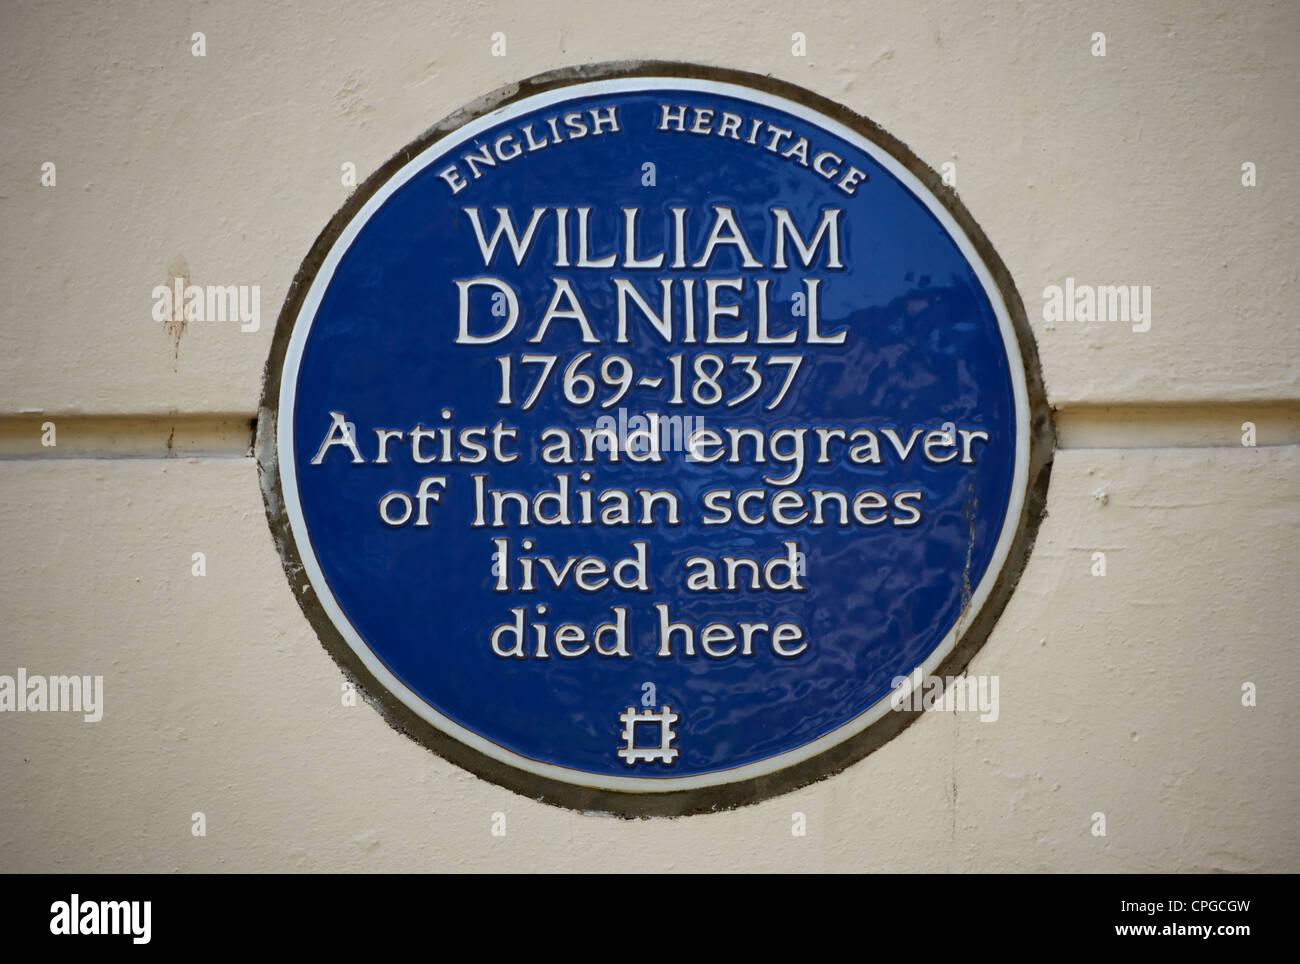 English Heritage blue plaque marquant un accueil et un décès de l'artiste et graveur William Daniell, Londres, Angleterre Banque D'Images